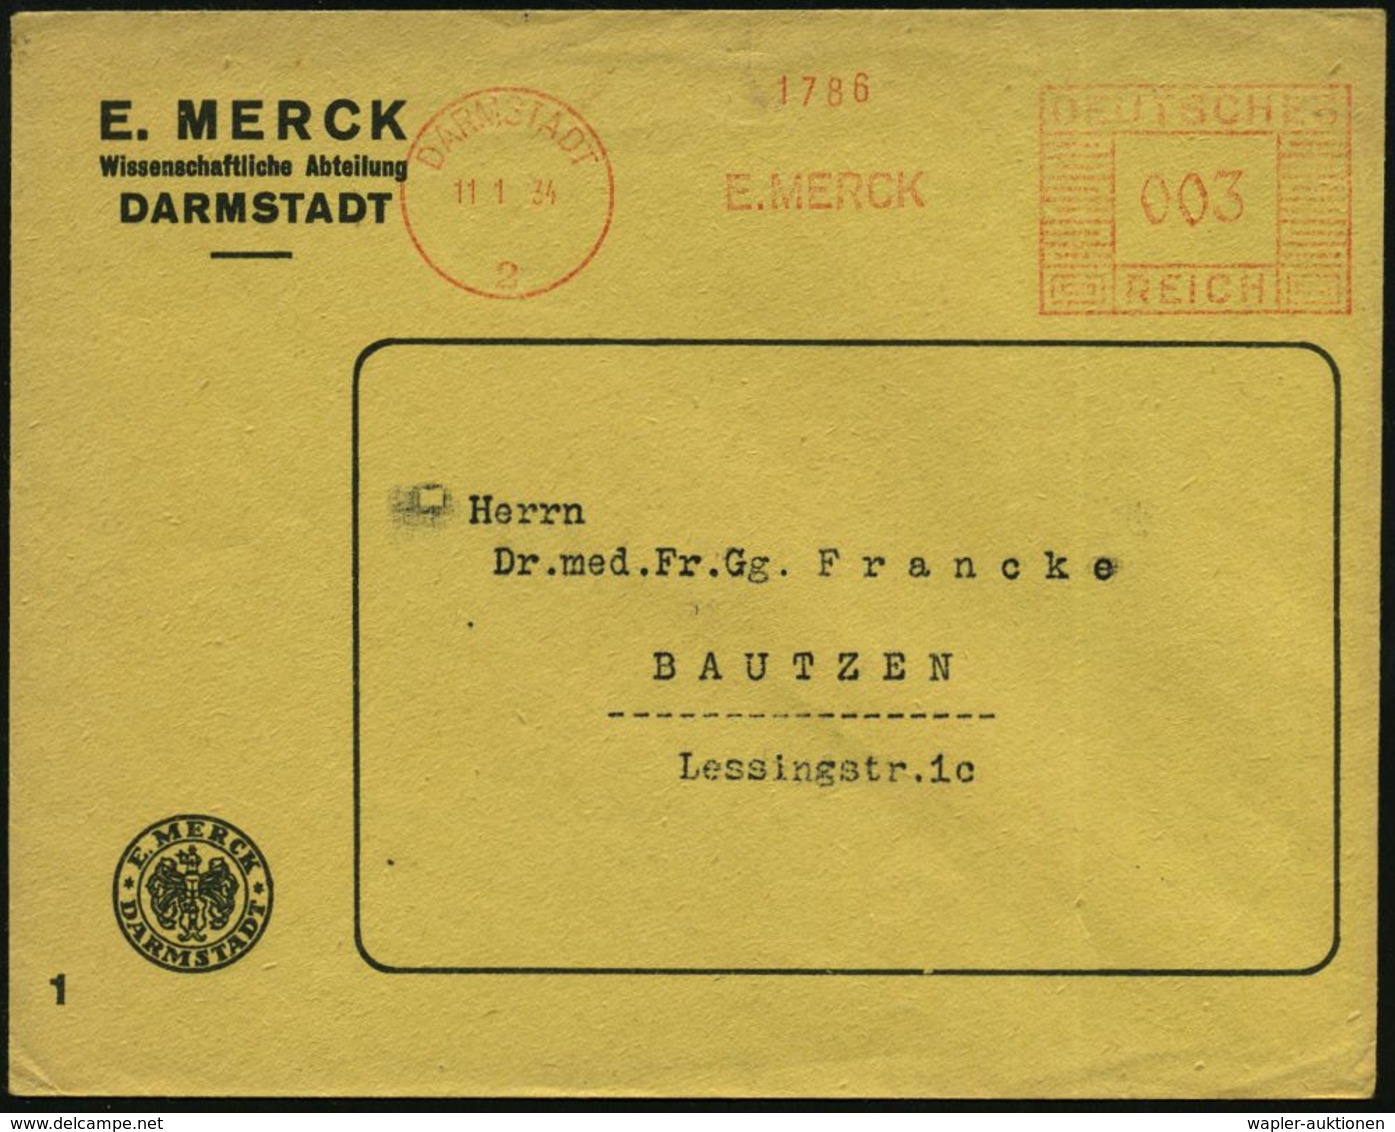 CHEMIE / PRODUKTE / CHEMISCHE INDUSTRIE : DARMSTADT/ 2/ E.MERCK 1934 (11.1.) AFS Auf Firmen-Bf.: E. MERCK Mit Firmen-Log - Chemie